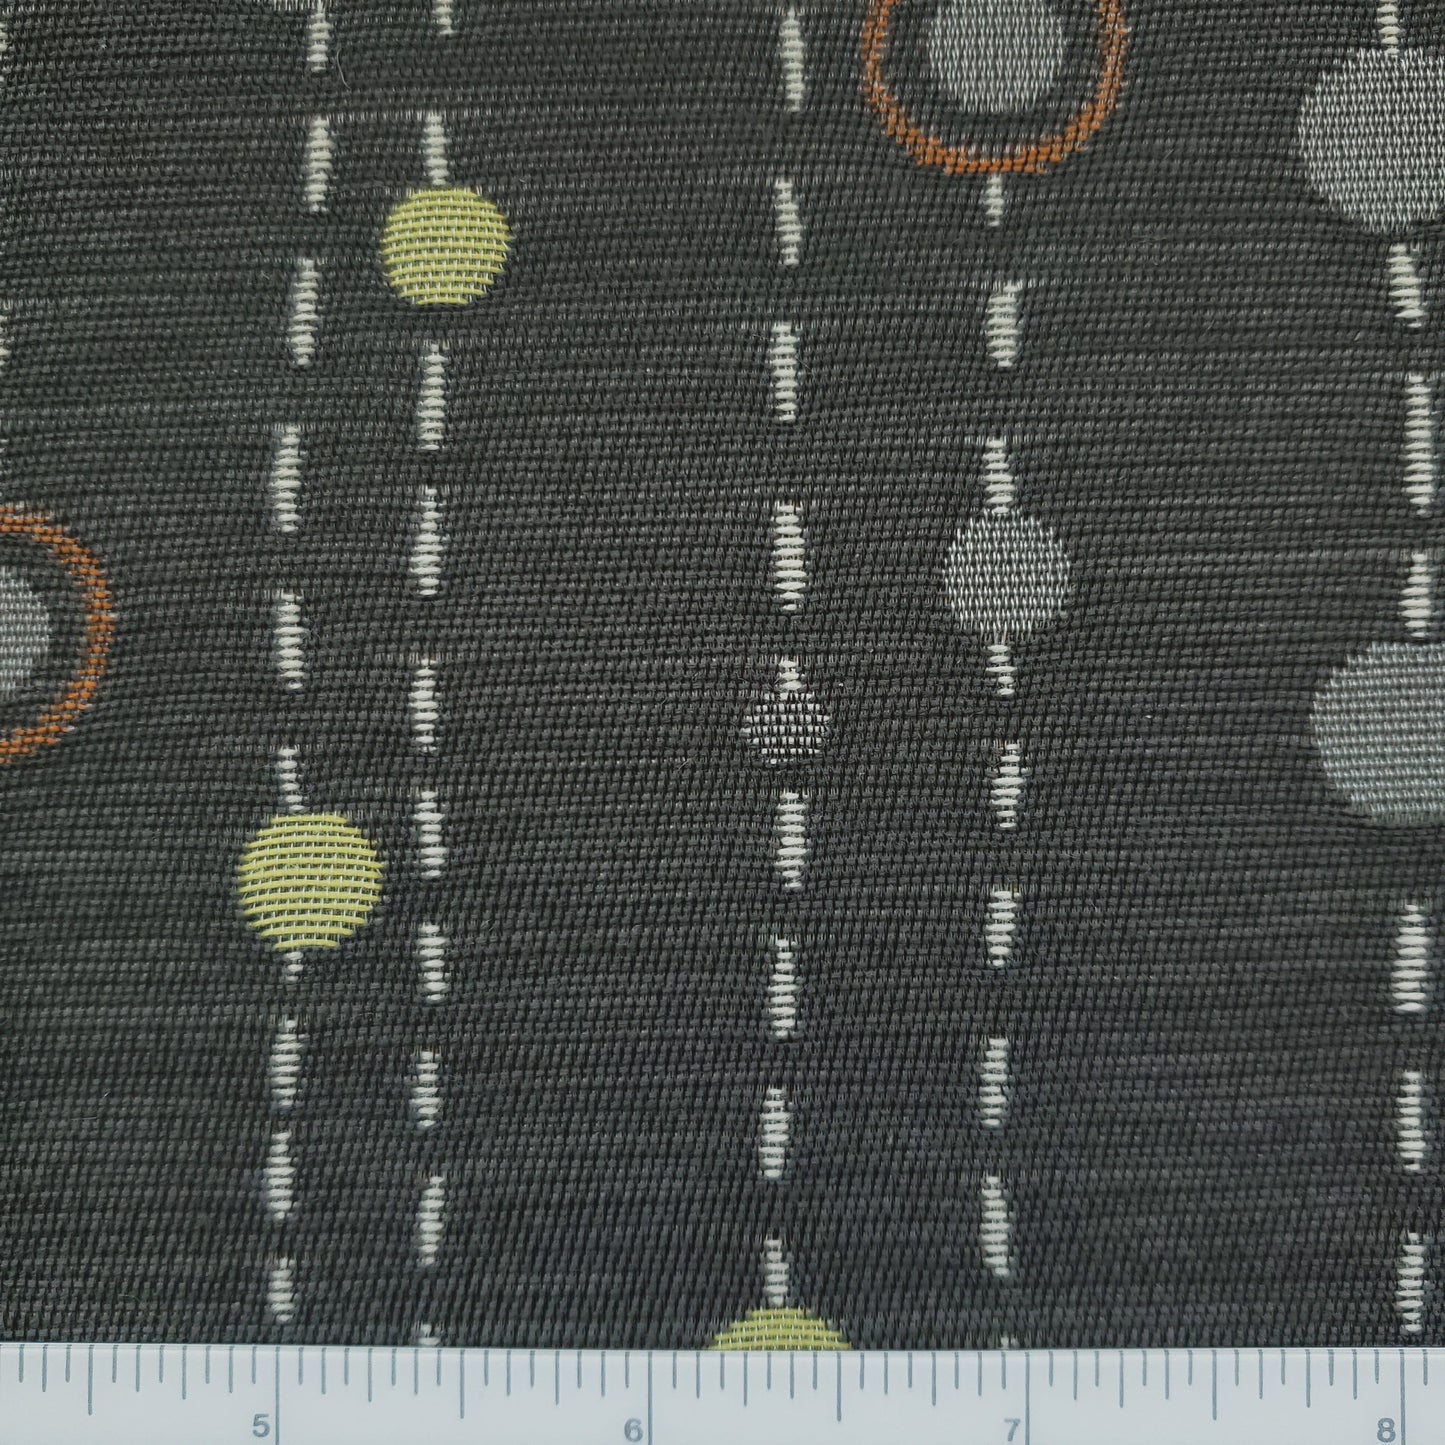 Haiku Nagoya Fabric